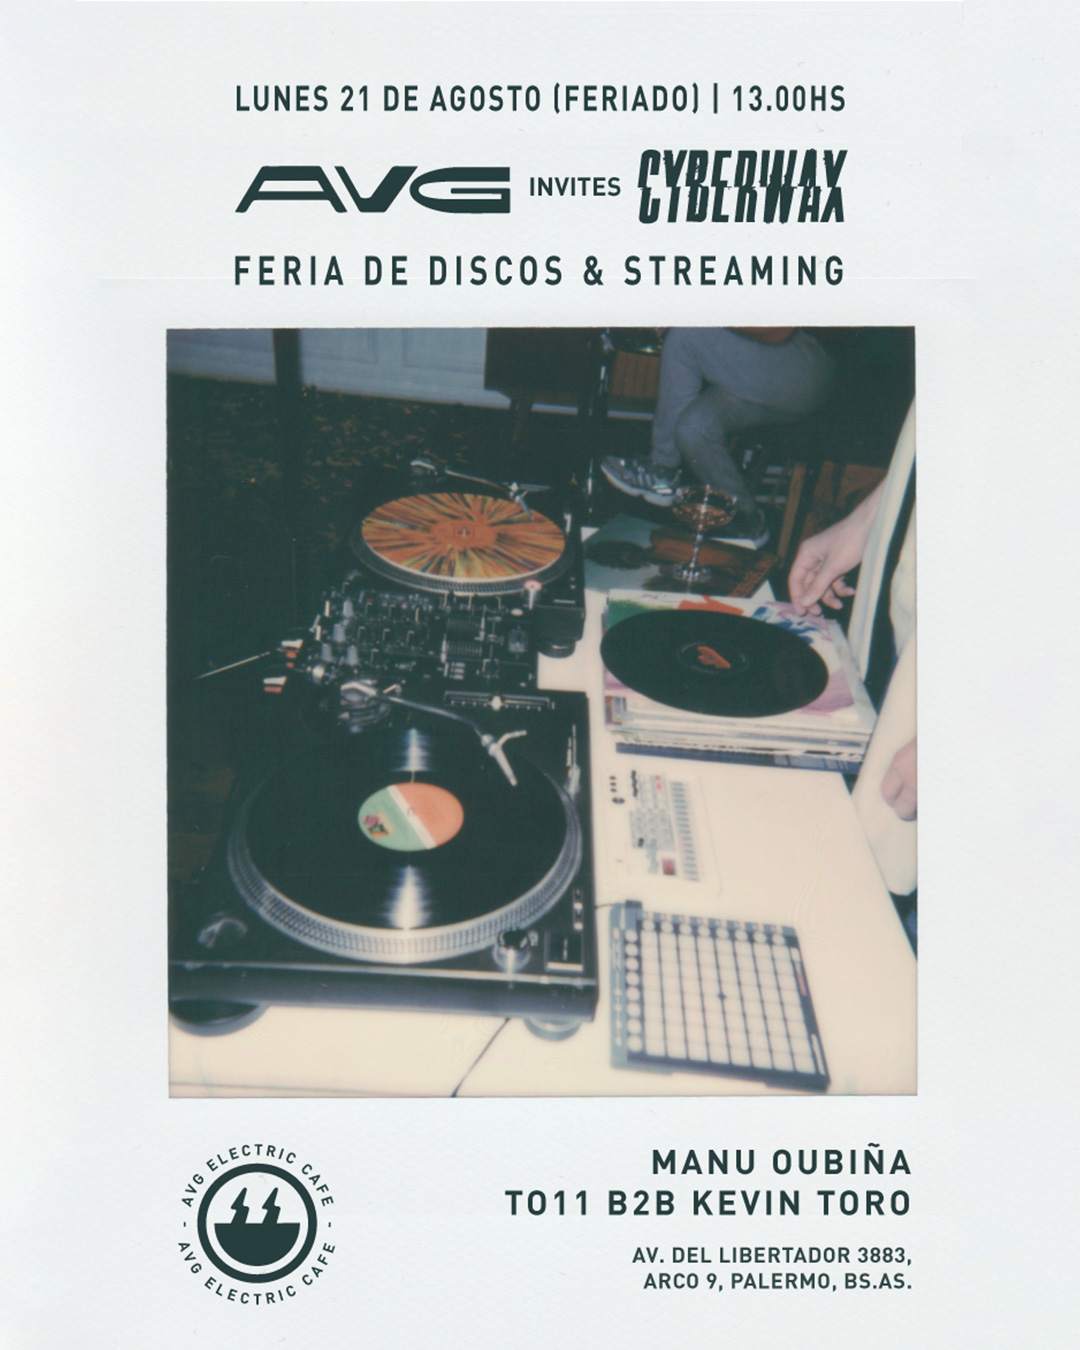 AVG Records invites Cyberwax // Feria de Discos - フライヤー表